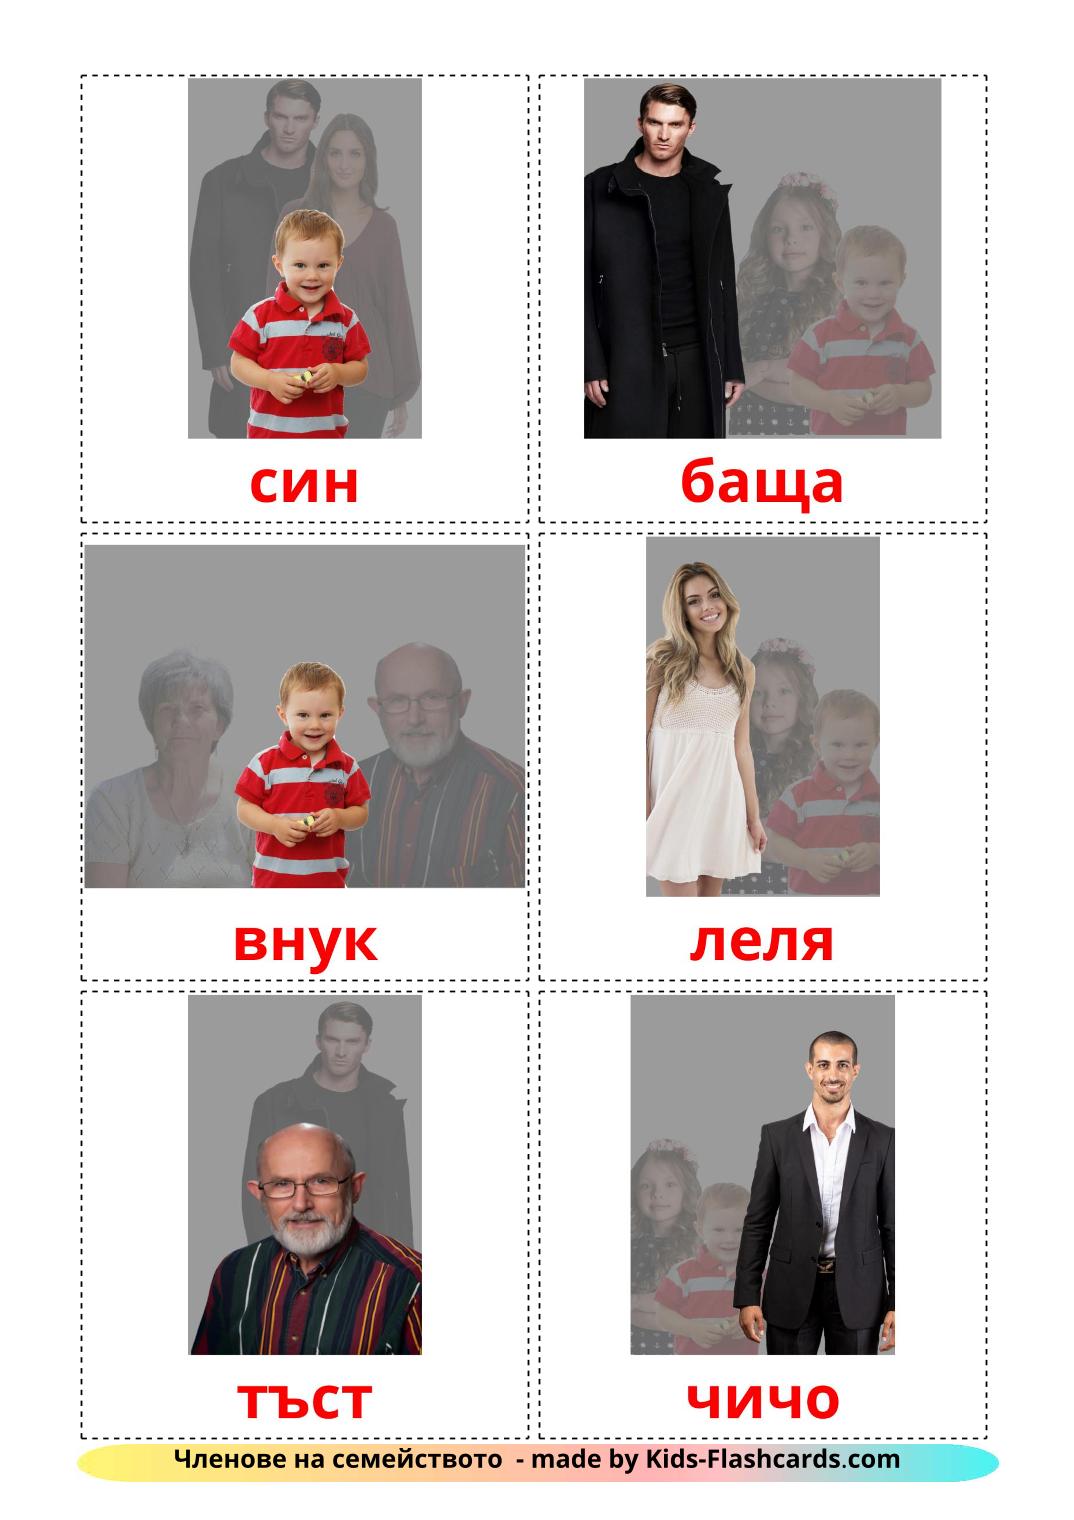 Les Membres de la Famille - 32 Flashcards bulgare imprimables gratuitement